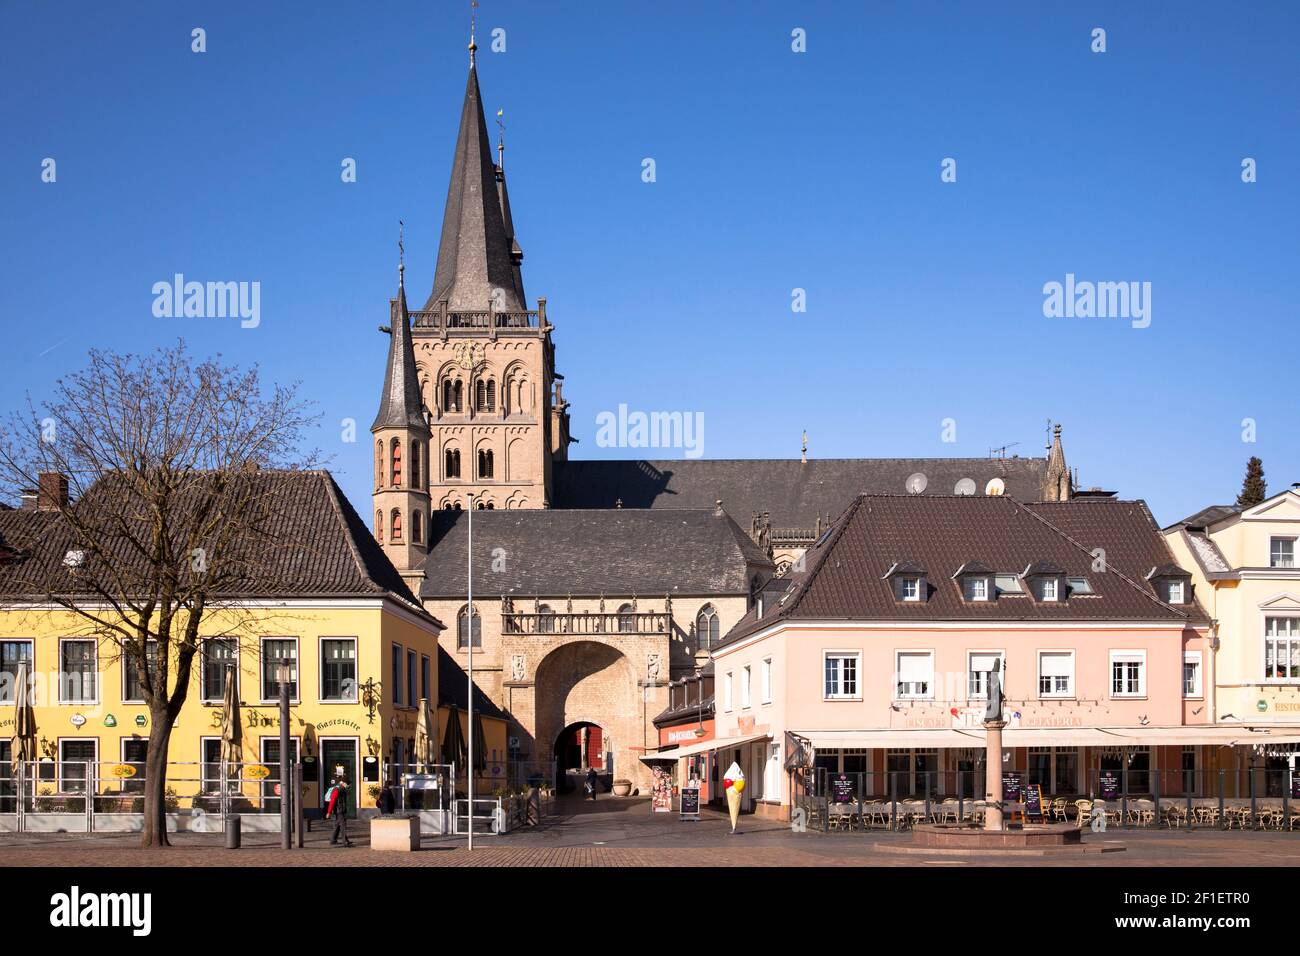 the St. Victor's cathedral and the marketplace, restaurants, Xanten, North Rhine-Westphalia, Germany.  der St. Viktor Dom  und der Marktplatz, Restaur Stock Photo